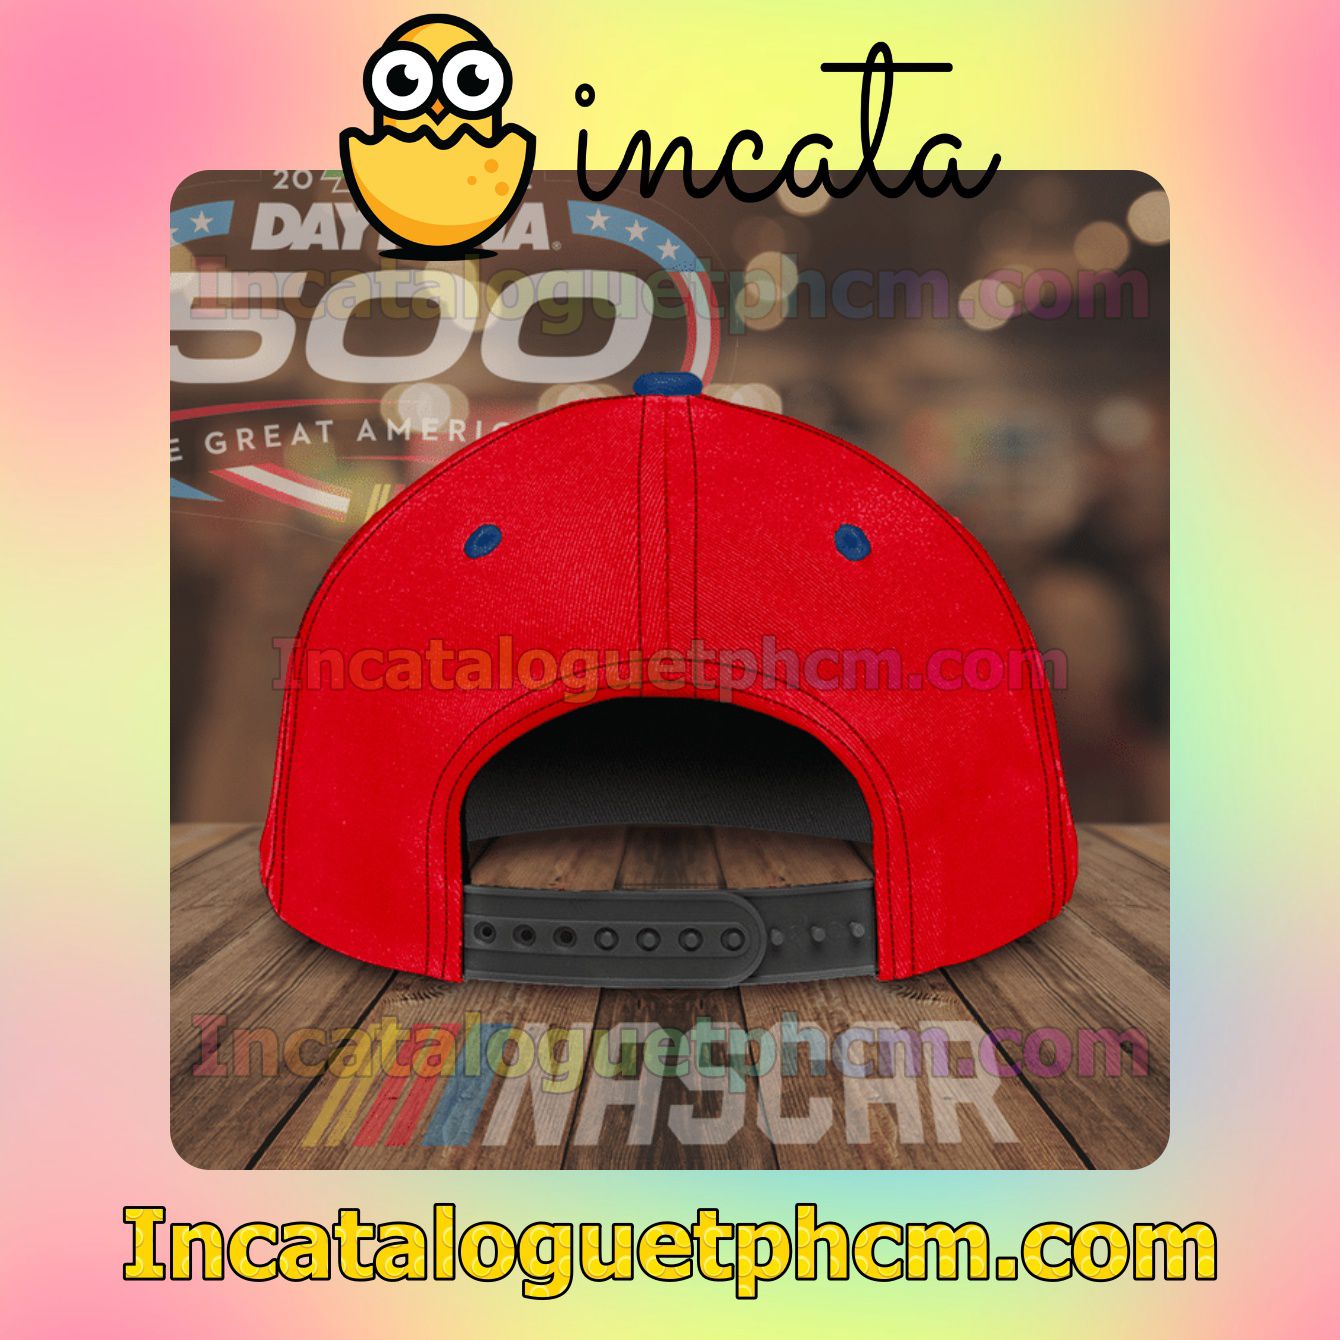 Great Nascar Daytona 500 Cindric 2 Team Penske Classic Hat Caps Gift For Men